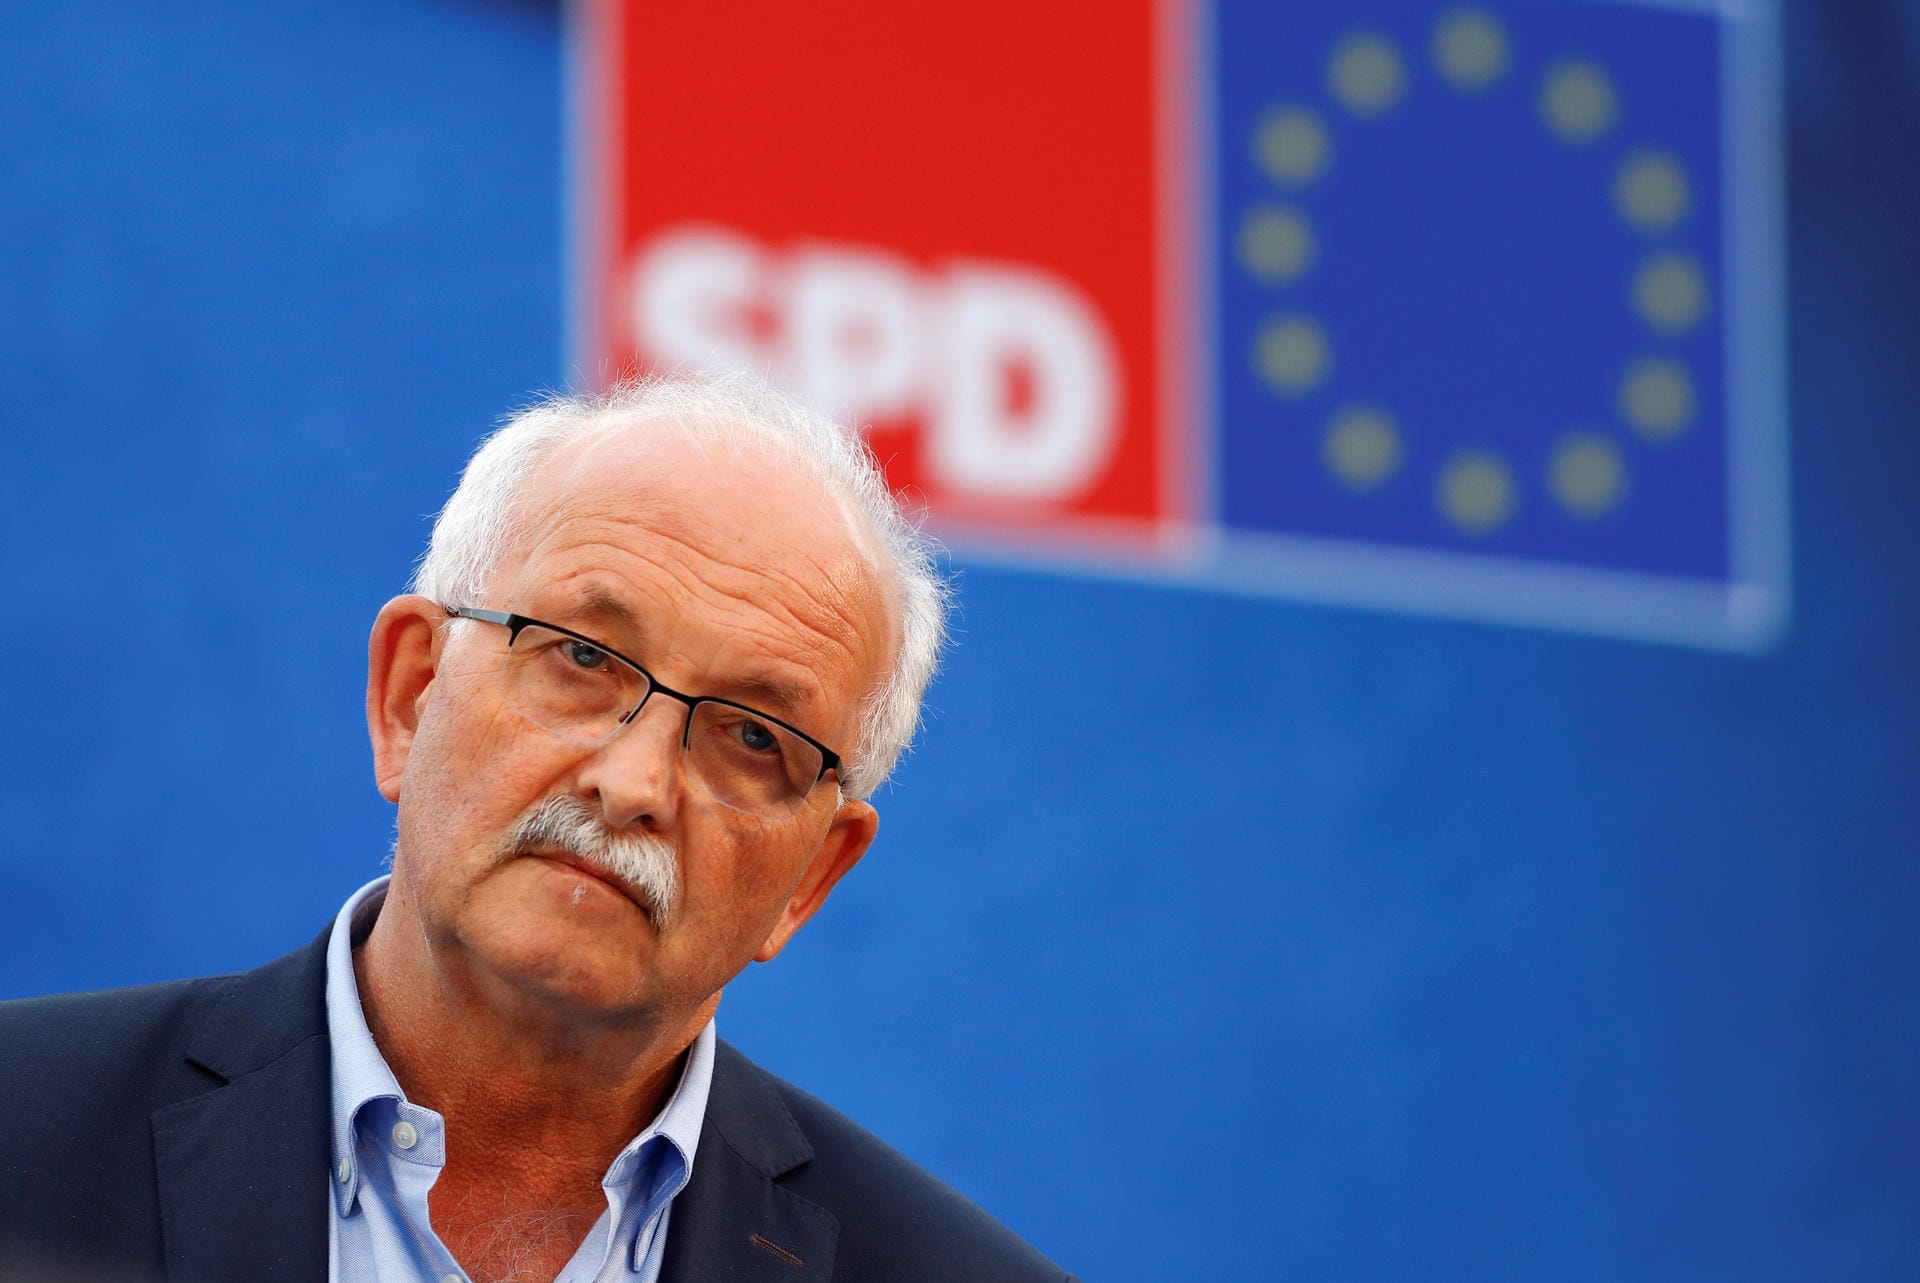 Vorsitzender der S&D-Fraktion im EU-Parlament Udo Bullmann: "Wir können das Spitzenkandidaten-Prinzip nicht einfach über Bord werfen, weil das Ergebnis der Wahl einigen Regierungschefs nicht in den Kram passt."